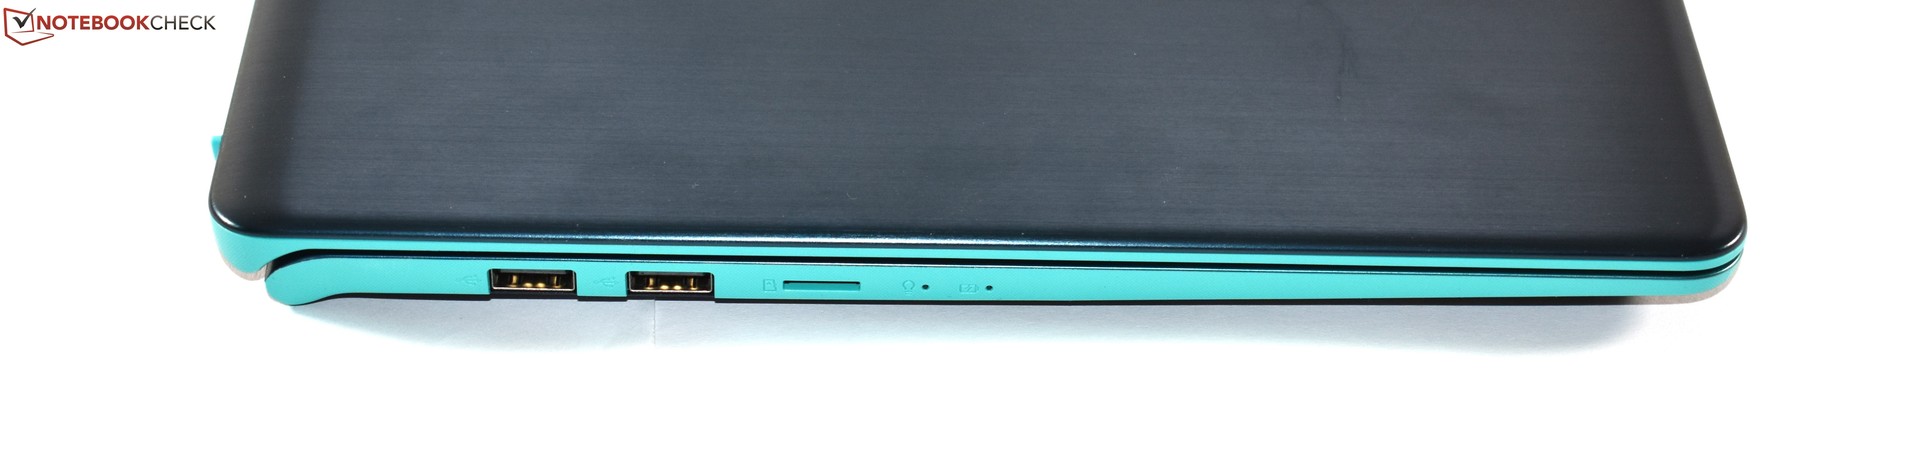 Asus VivoBook S15 S530UN-BQ353T -  External Reviews